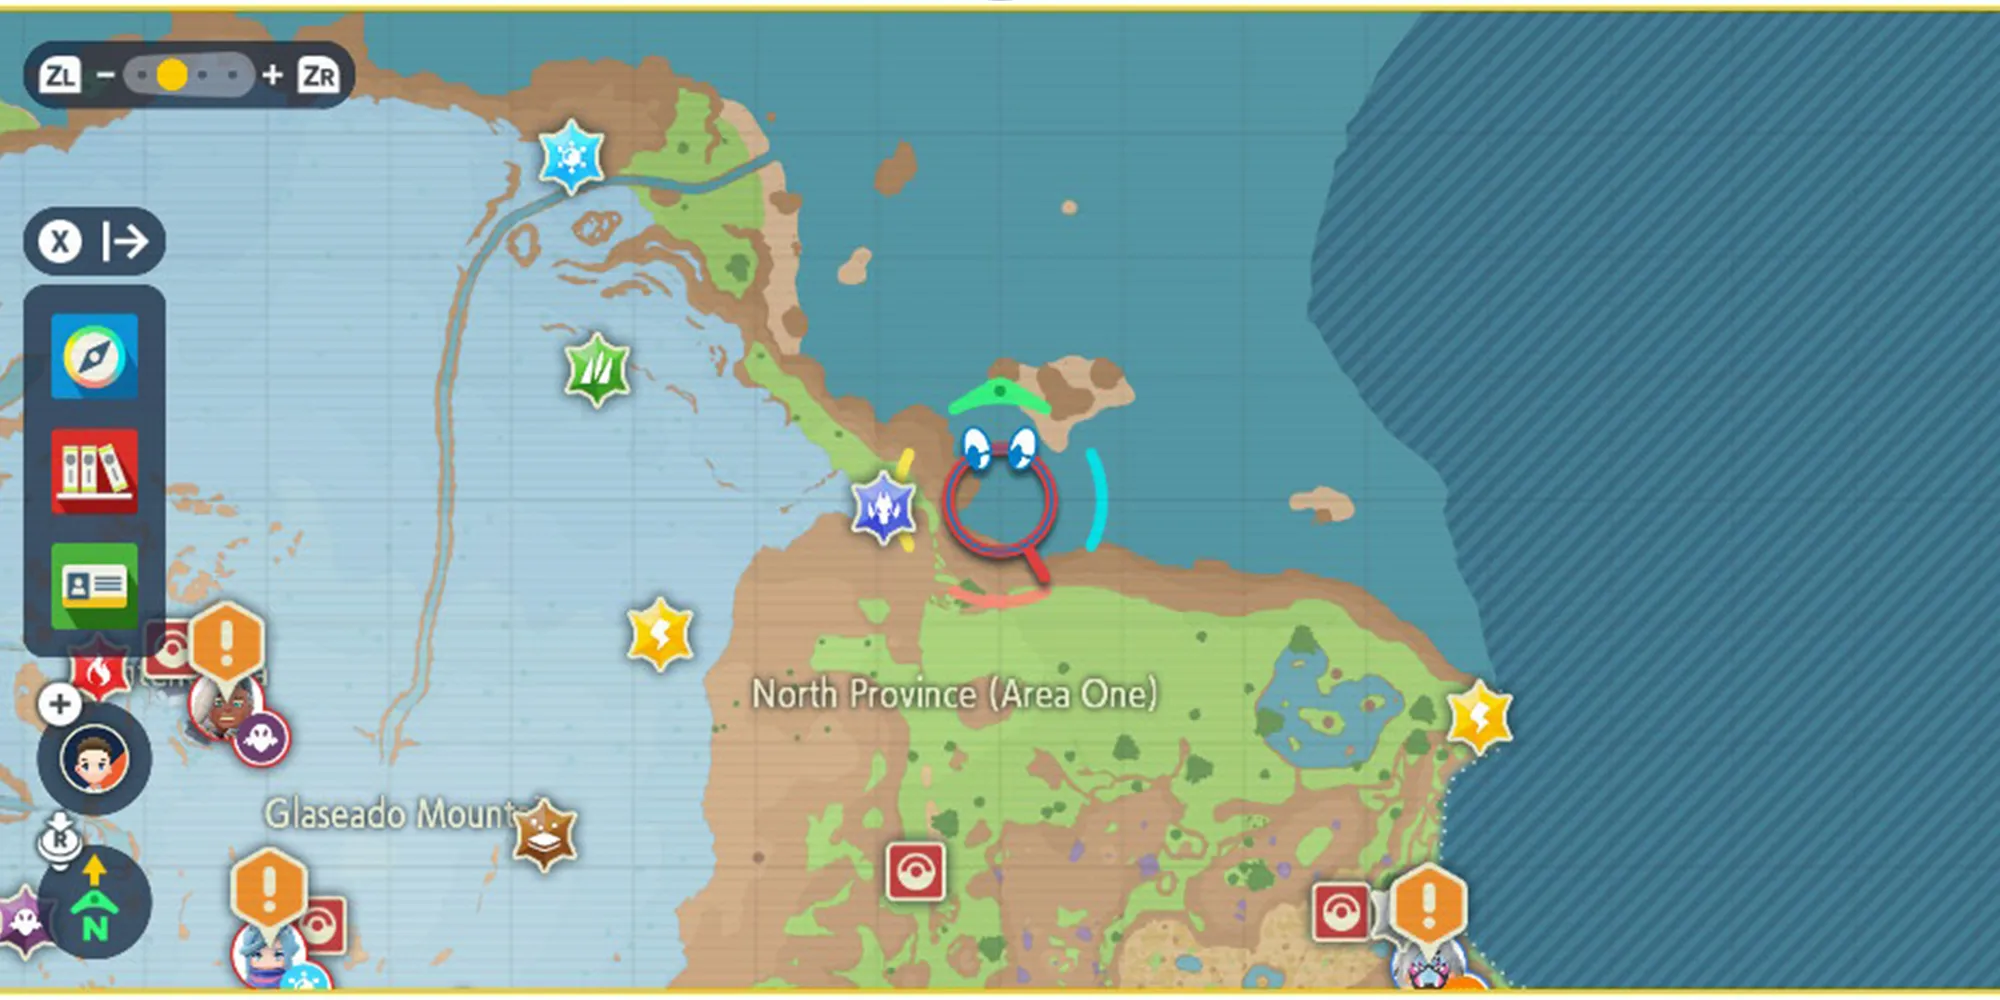 Capture d'écran de la zone une de la Province Nord dans Pokémon Scarlet & Violet